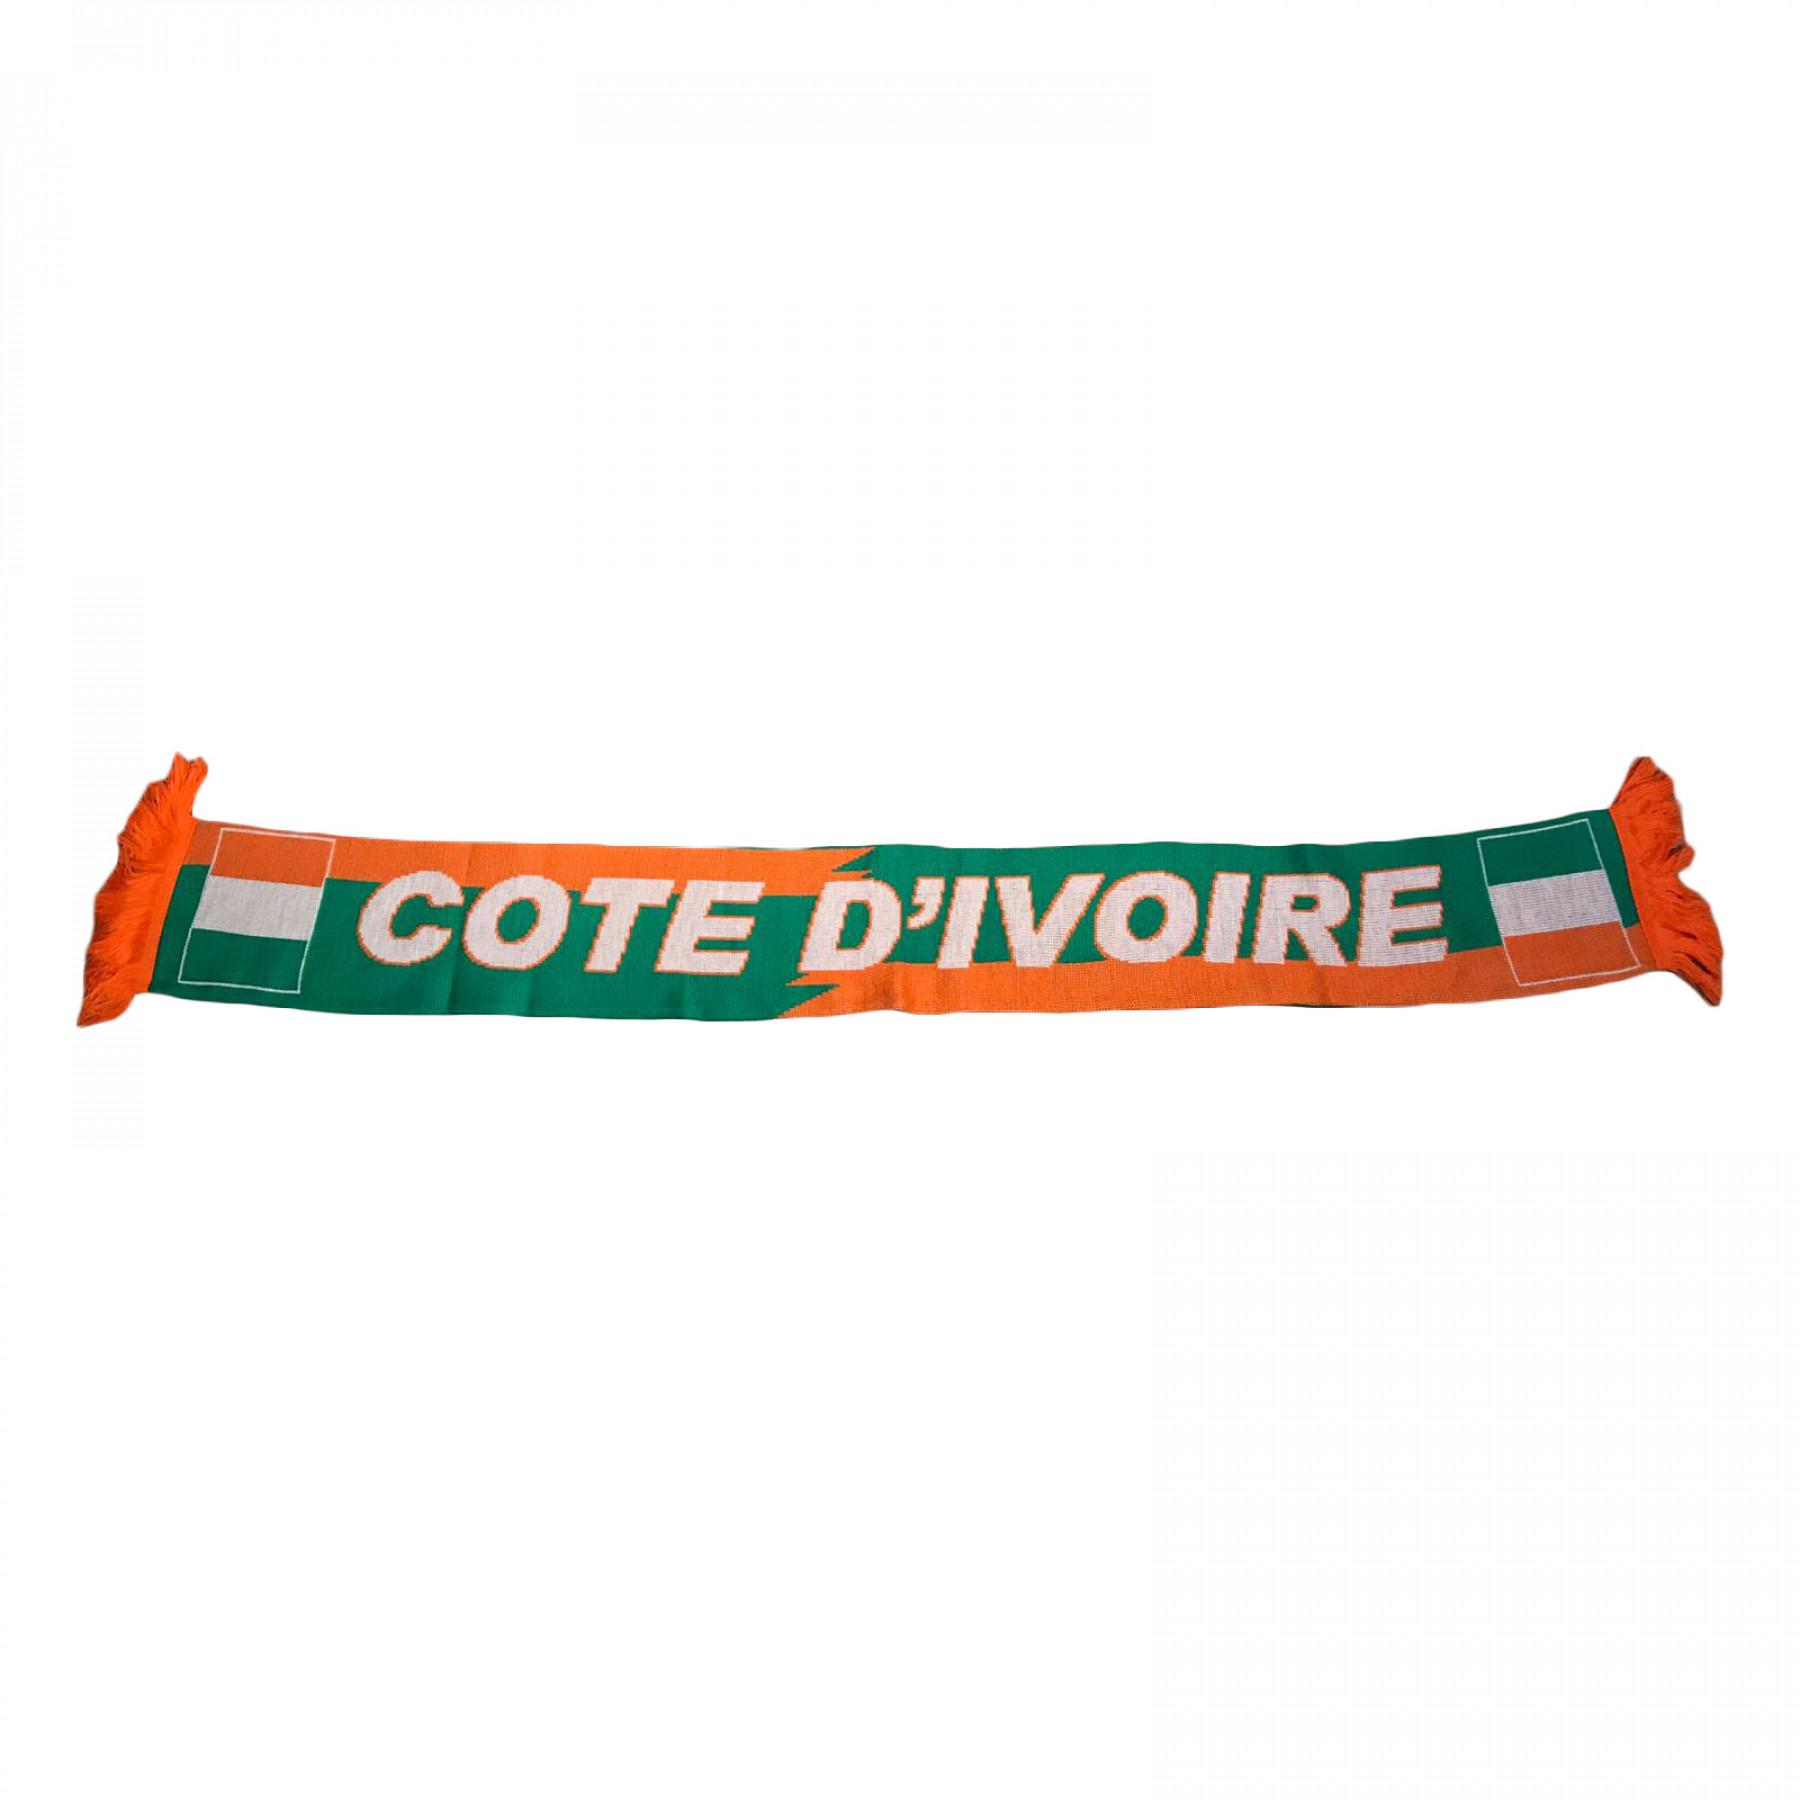  Supporter ShopE c h a r p e   Côte d'Ivoire